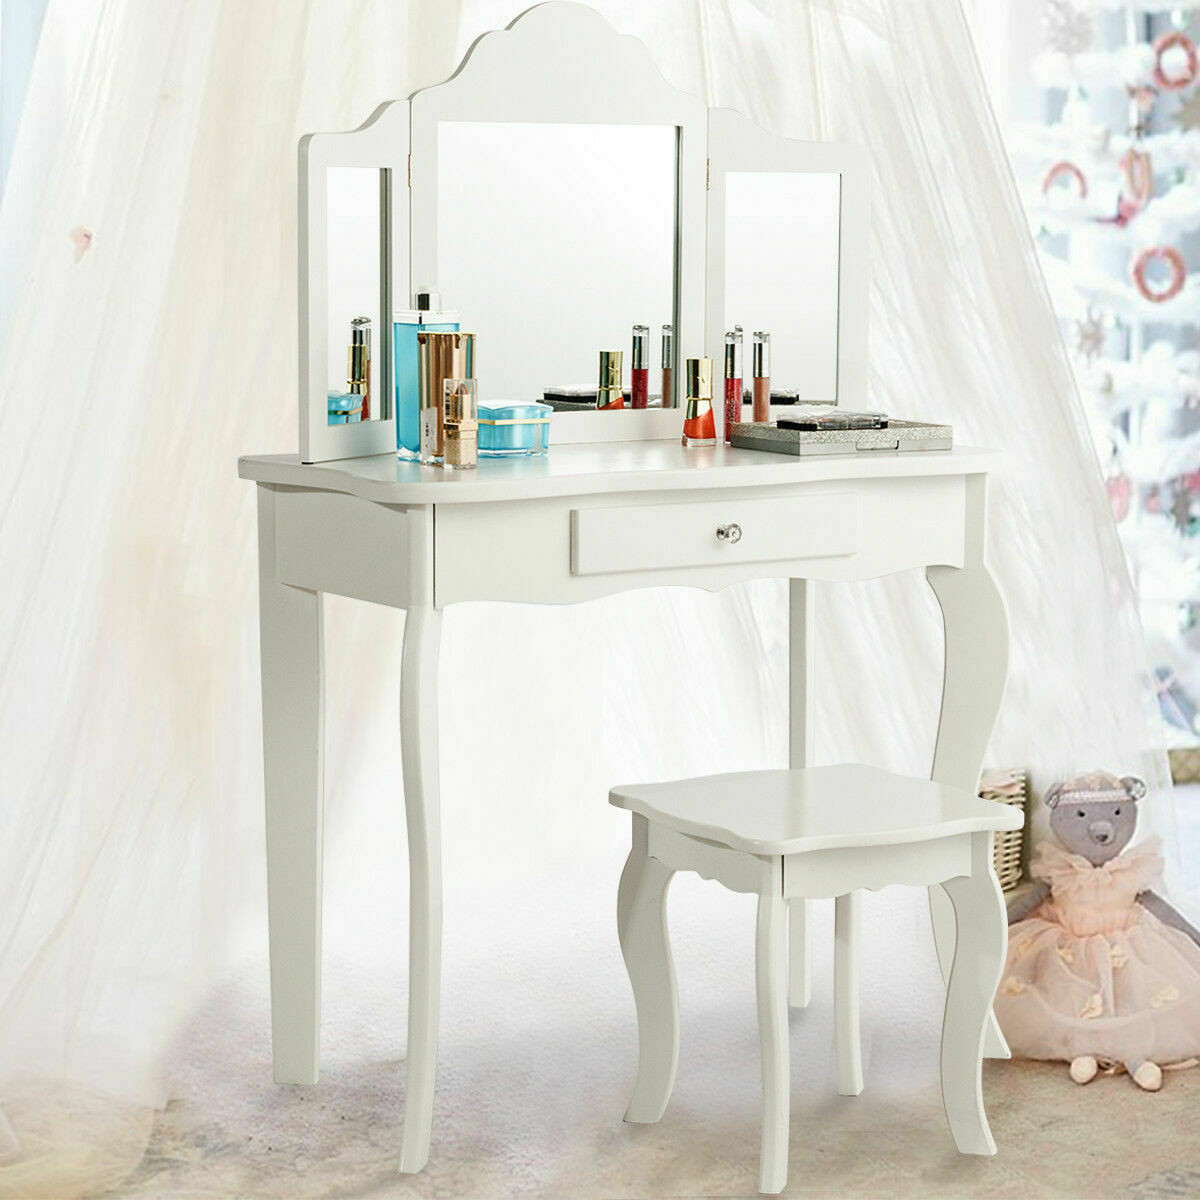 Kids Makeup Dressing Mirror Vanity Table Stool Set